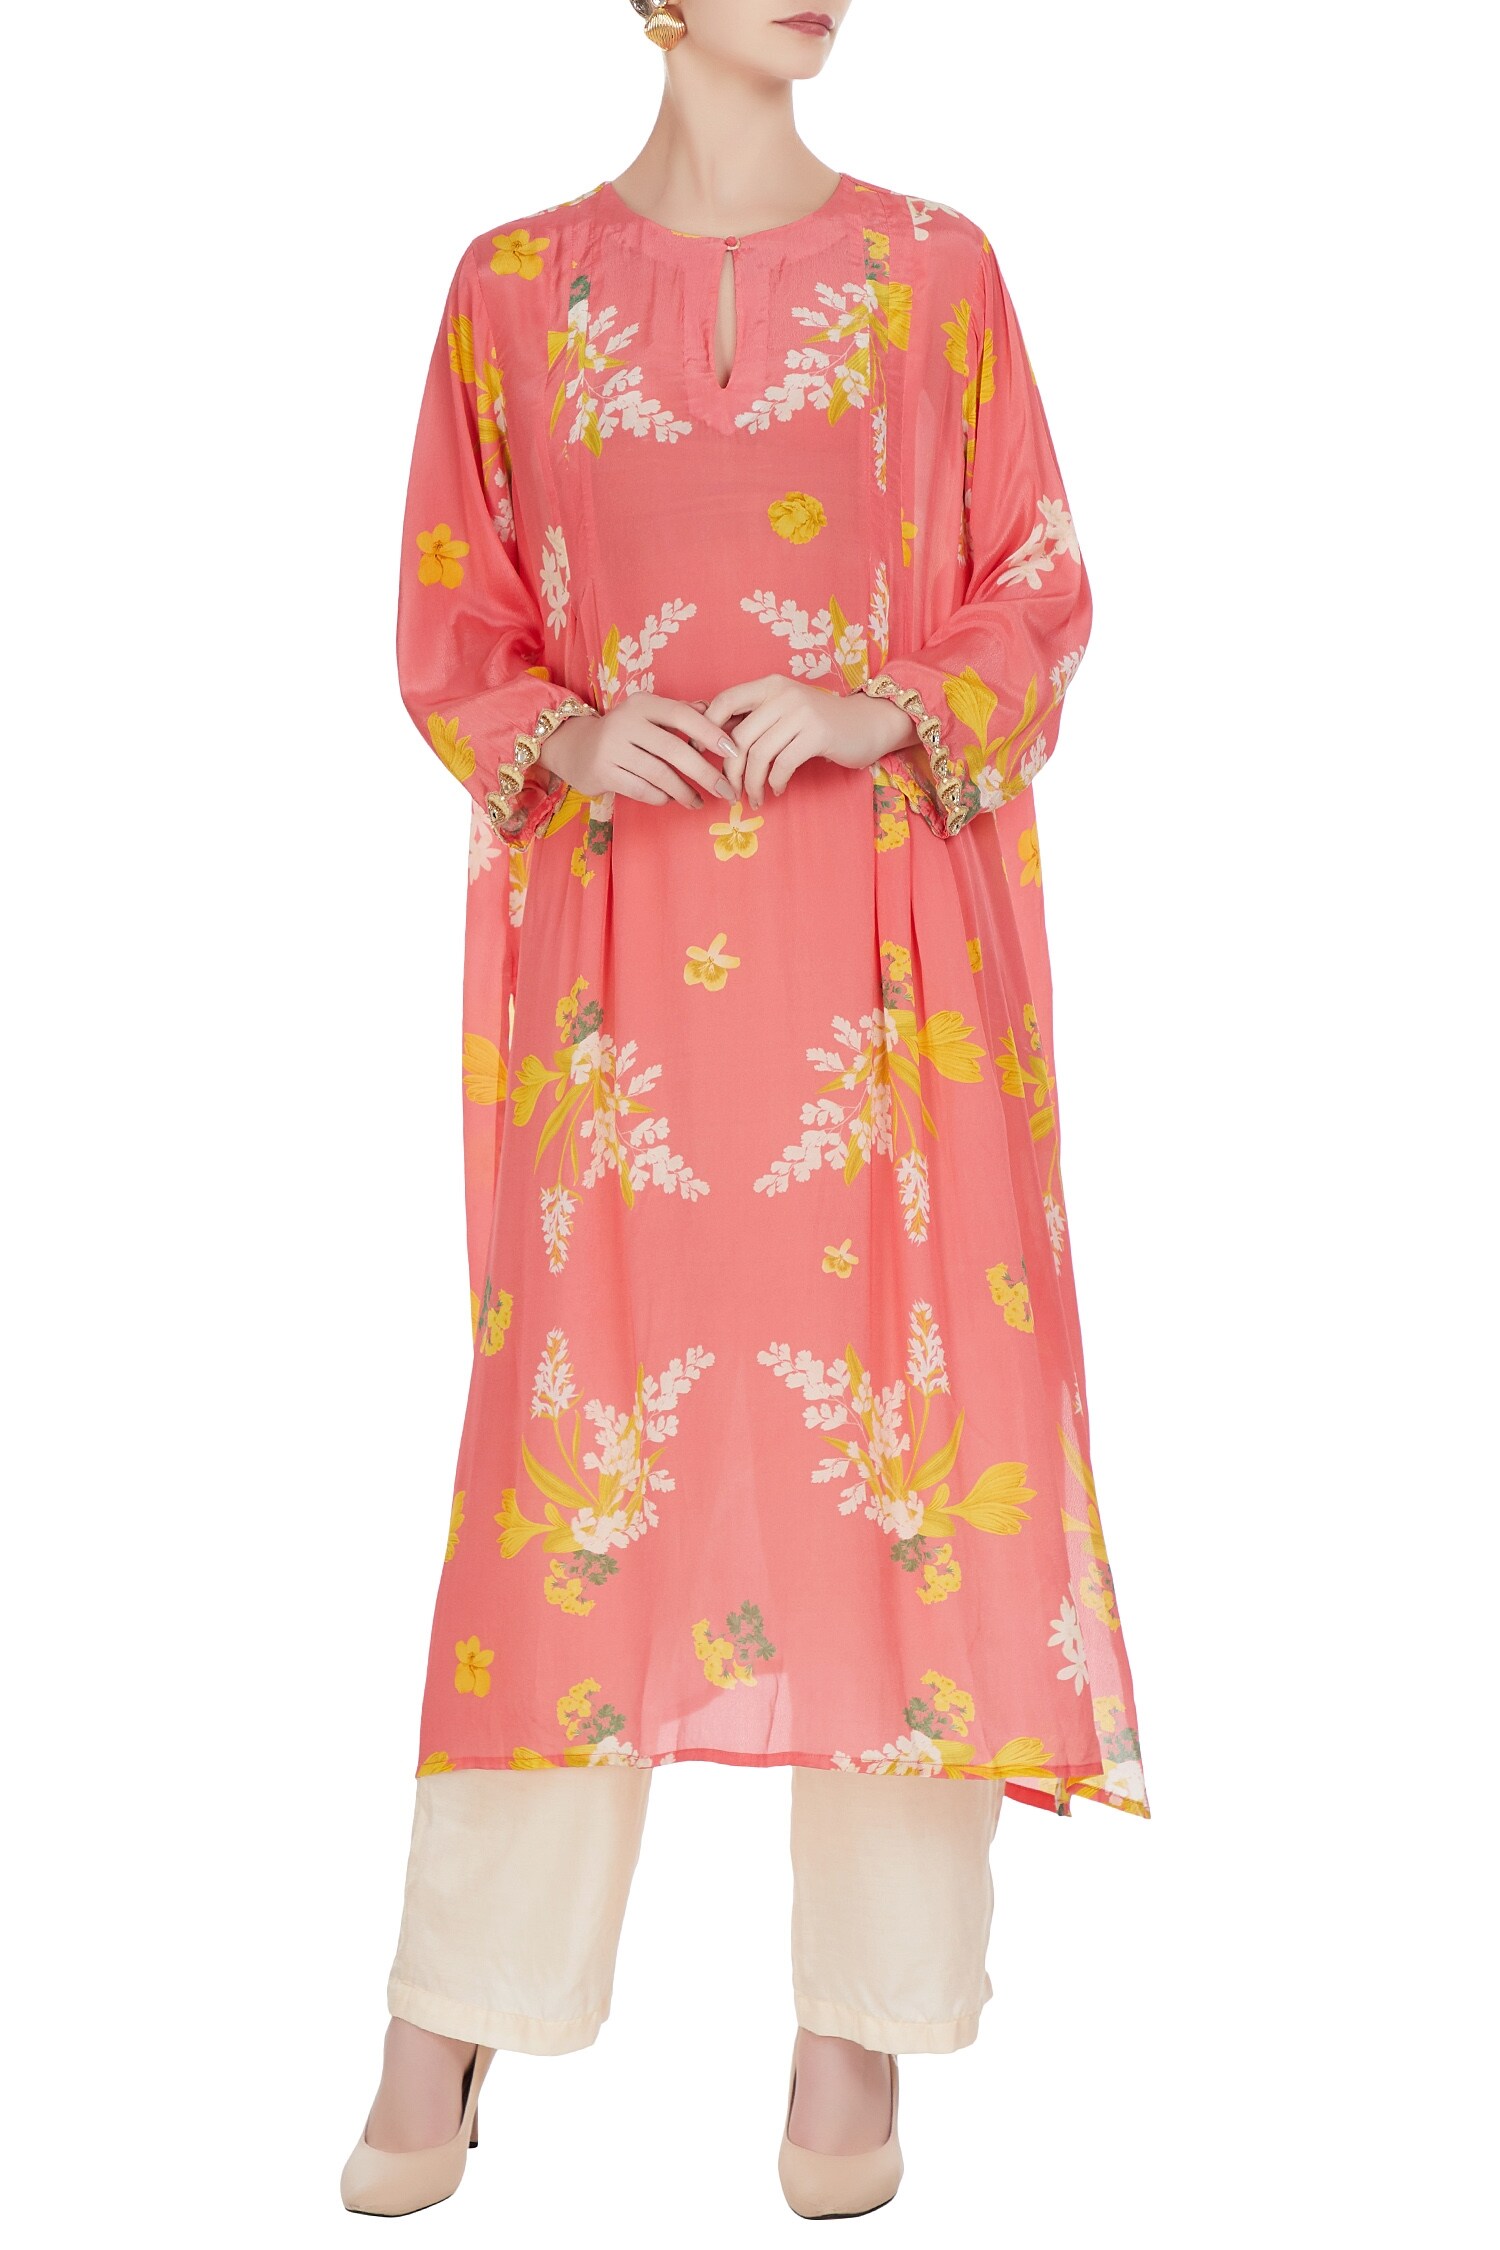 Buy Pink floral printed kurta with pants by Arpita Mehta at Aza Fashions